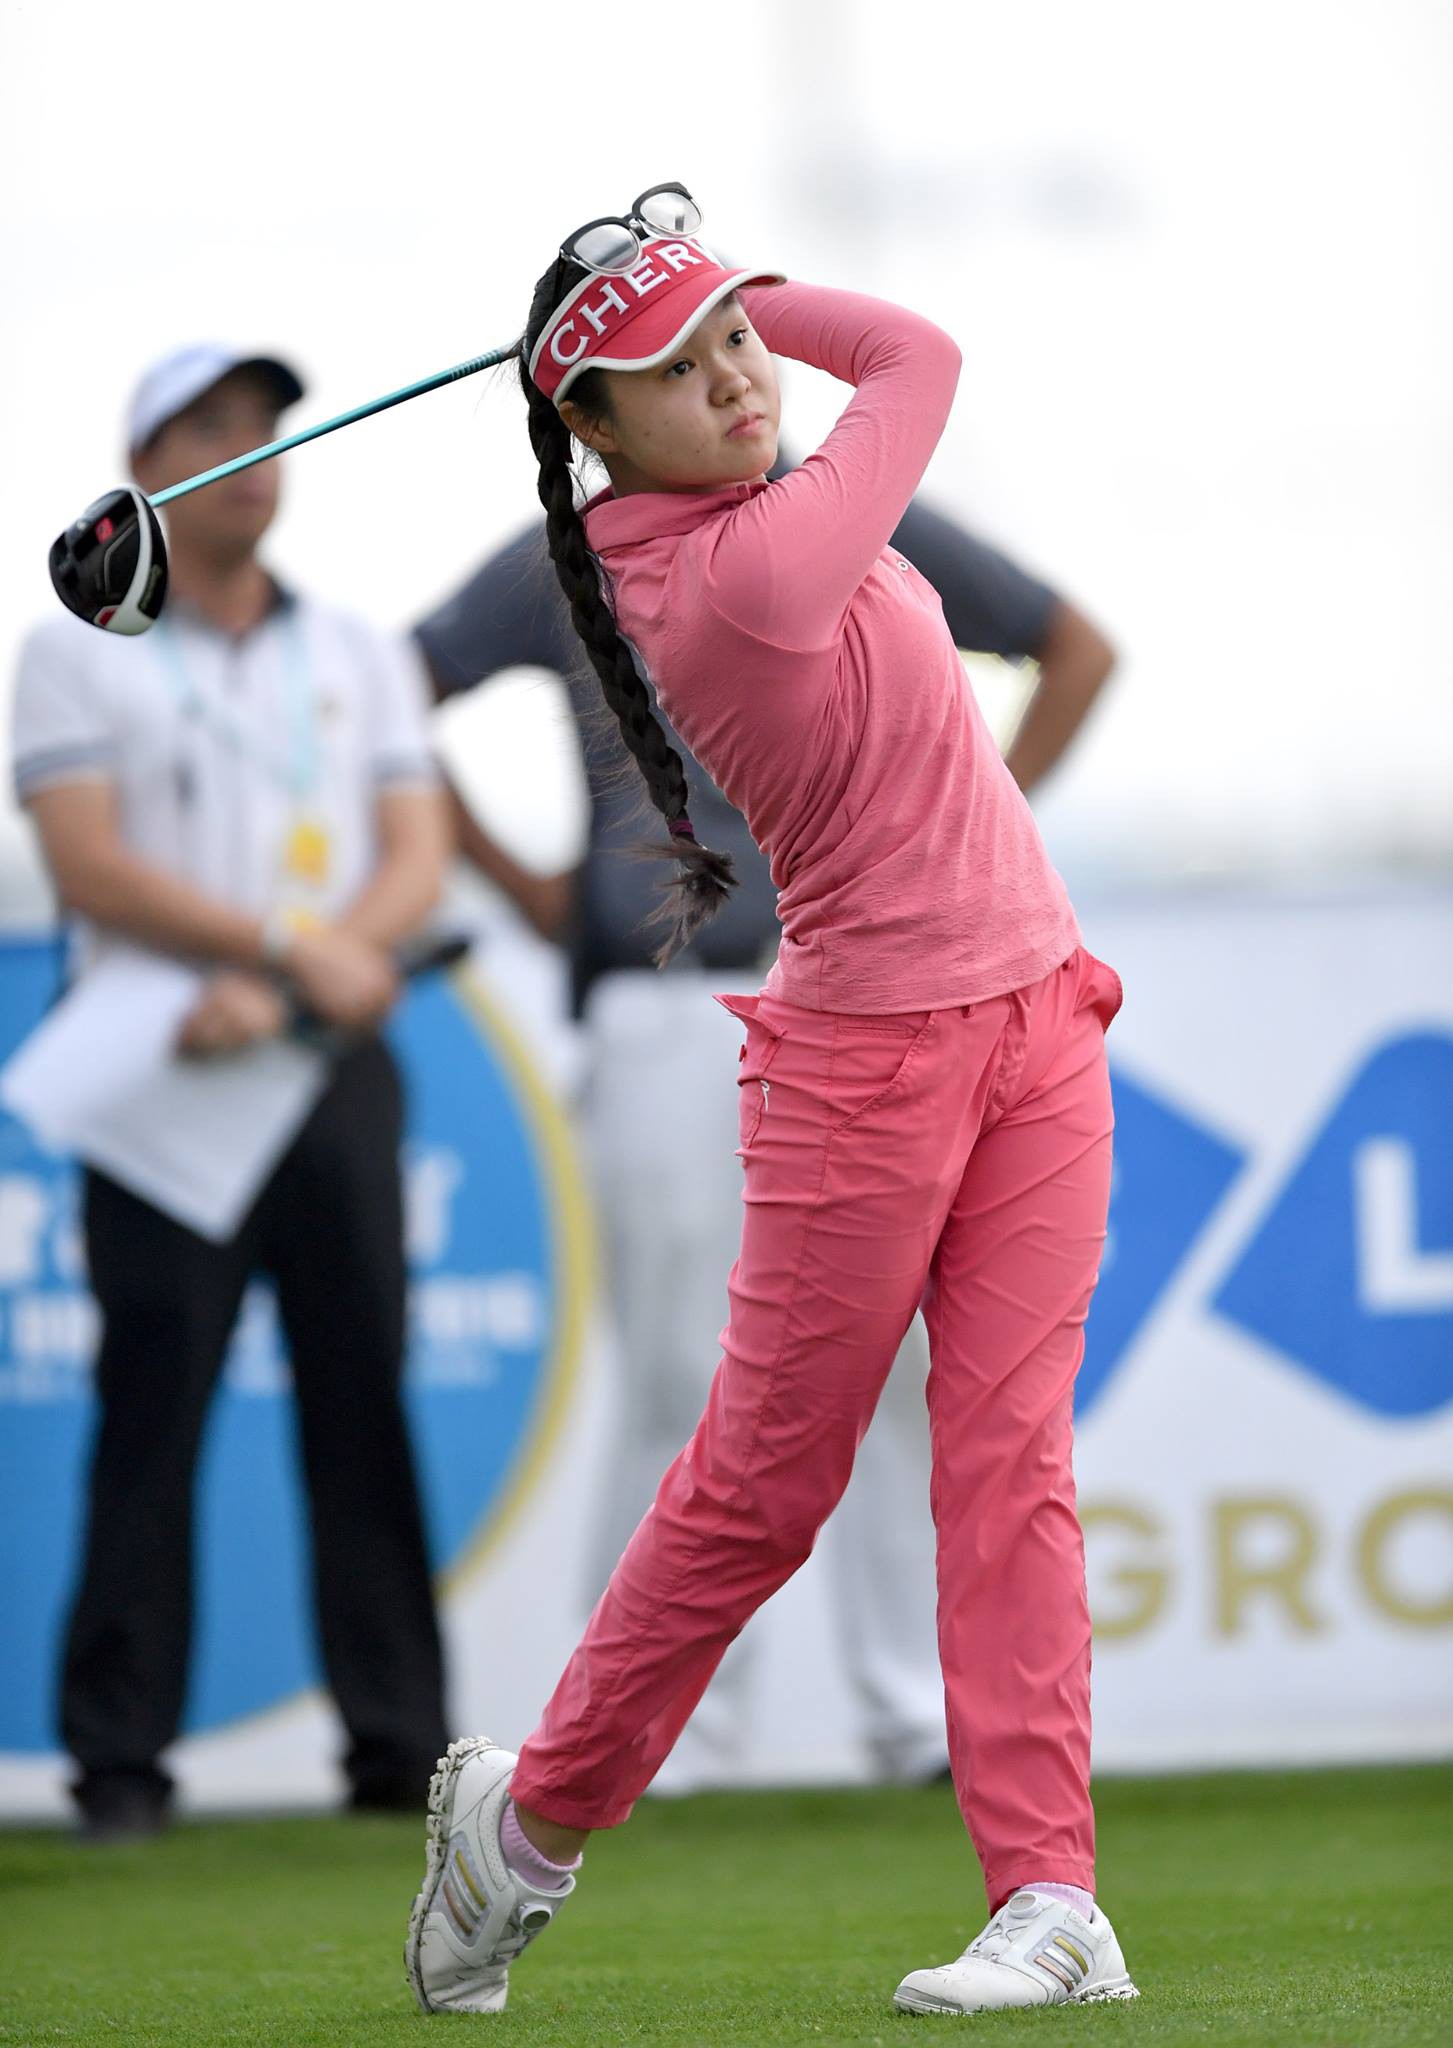 Hanako đang nổi lên trở thành tay golf nữ hàng đầu Việt Nam